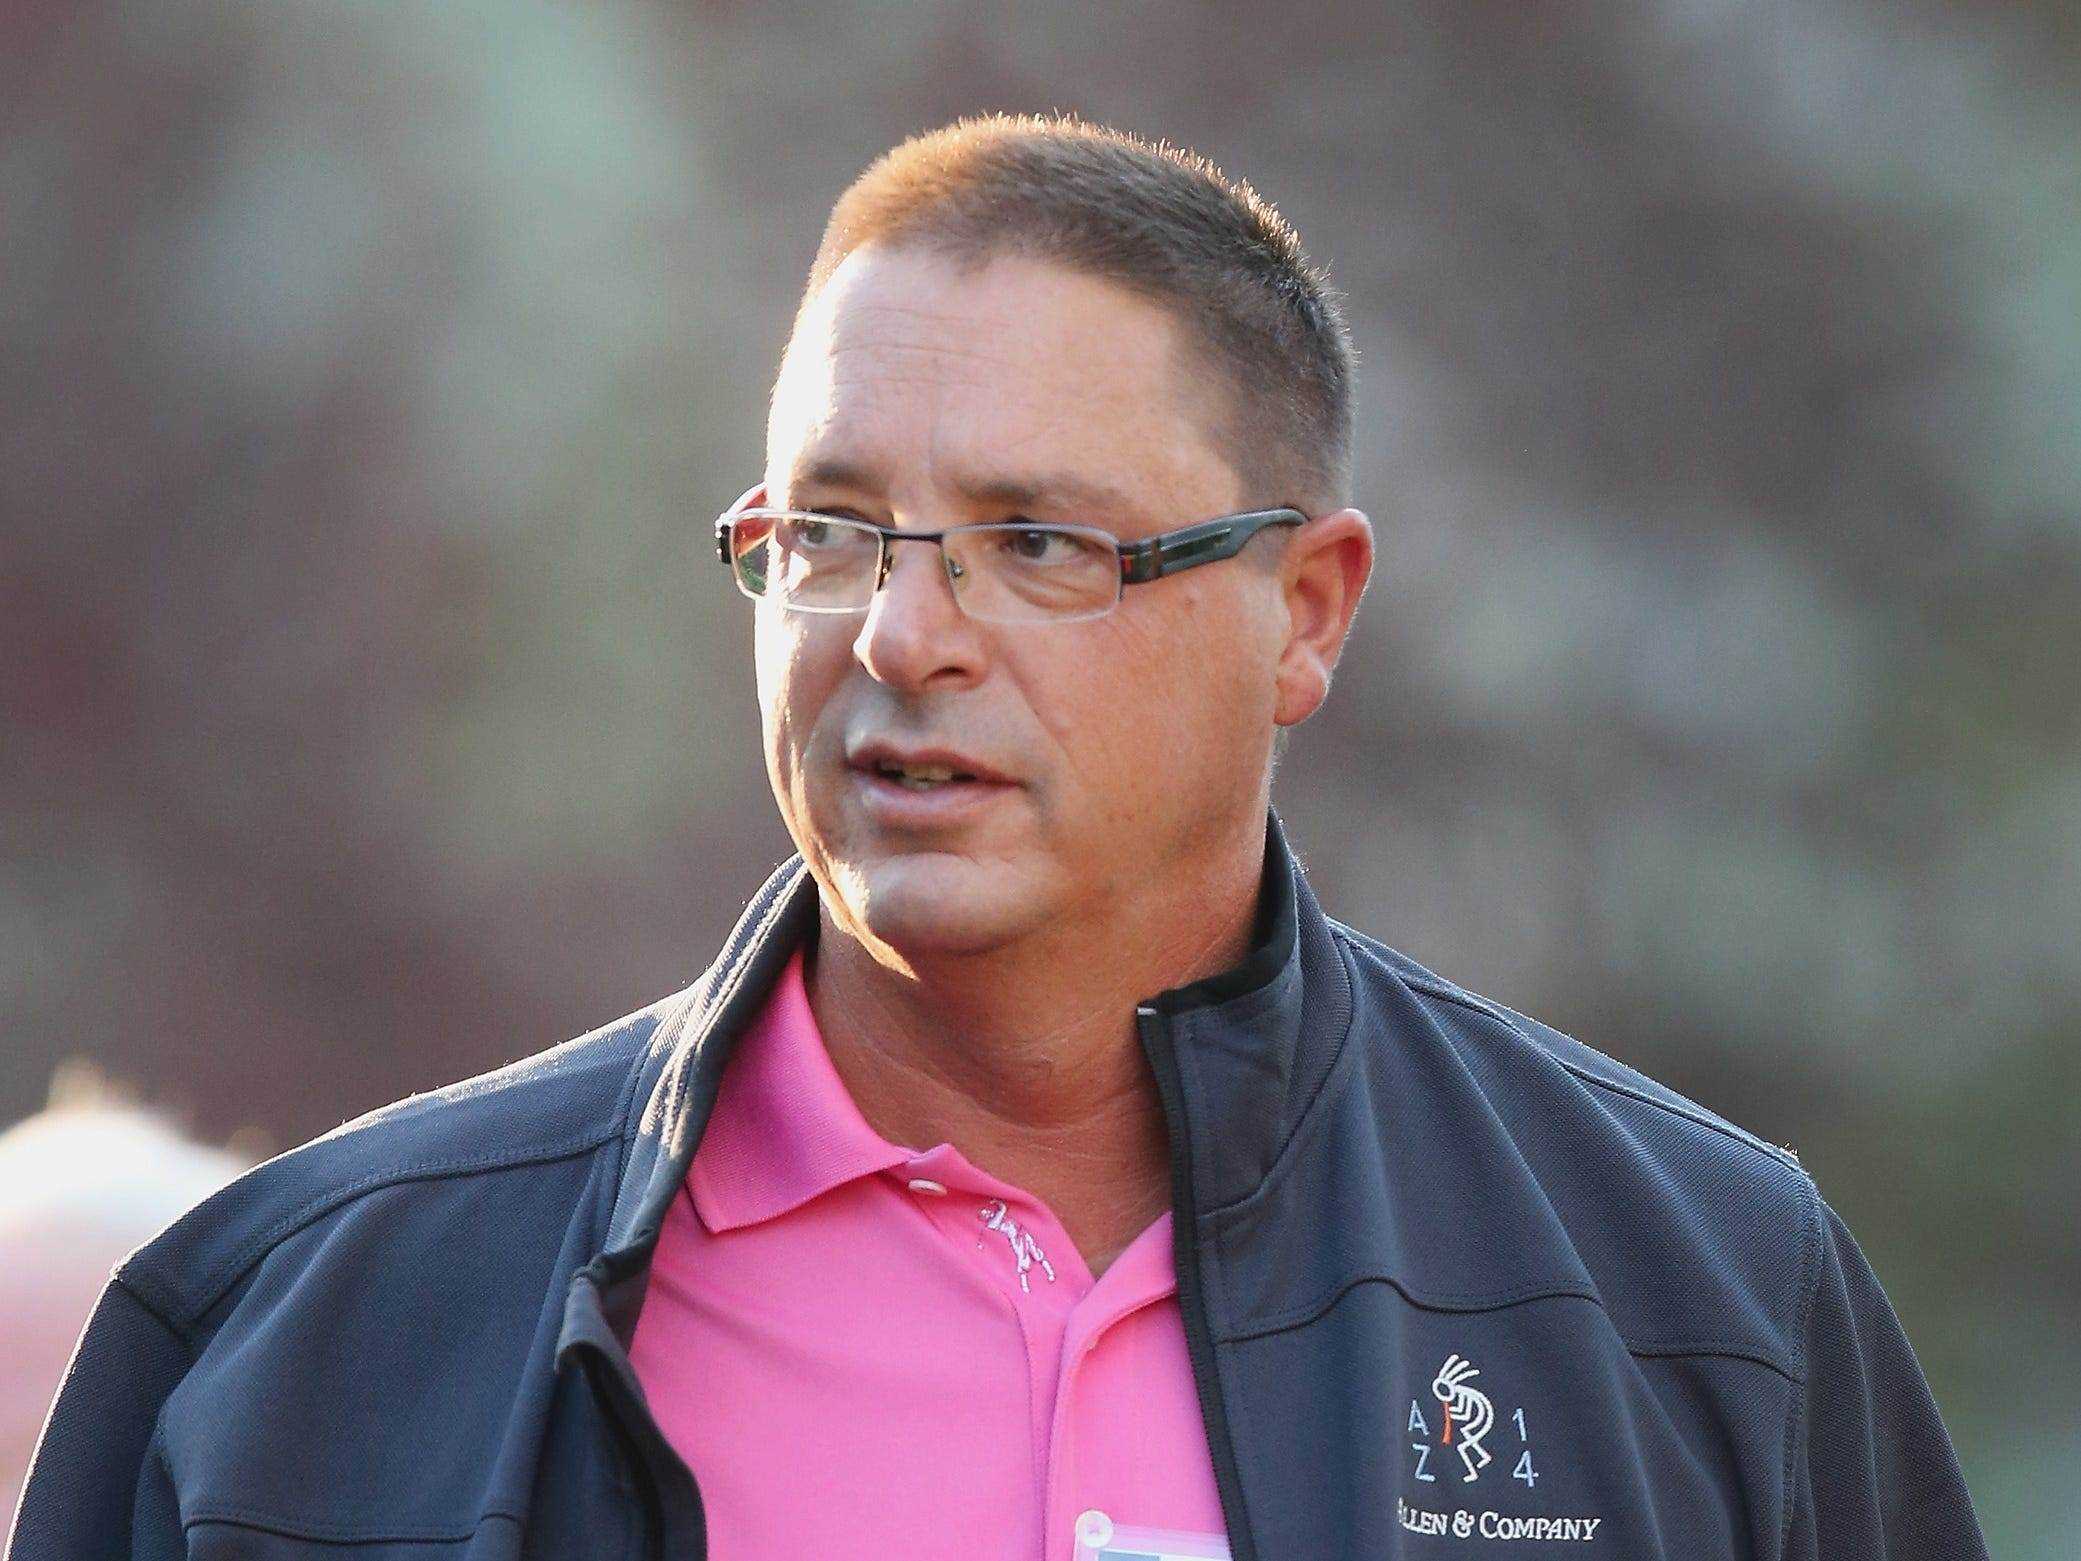 Michael Larson trägt ein pinkfarbenes Polo und eine Jacke